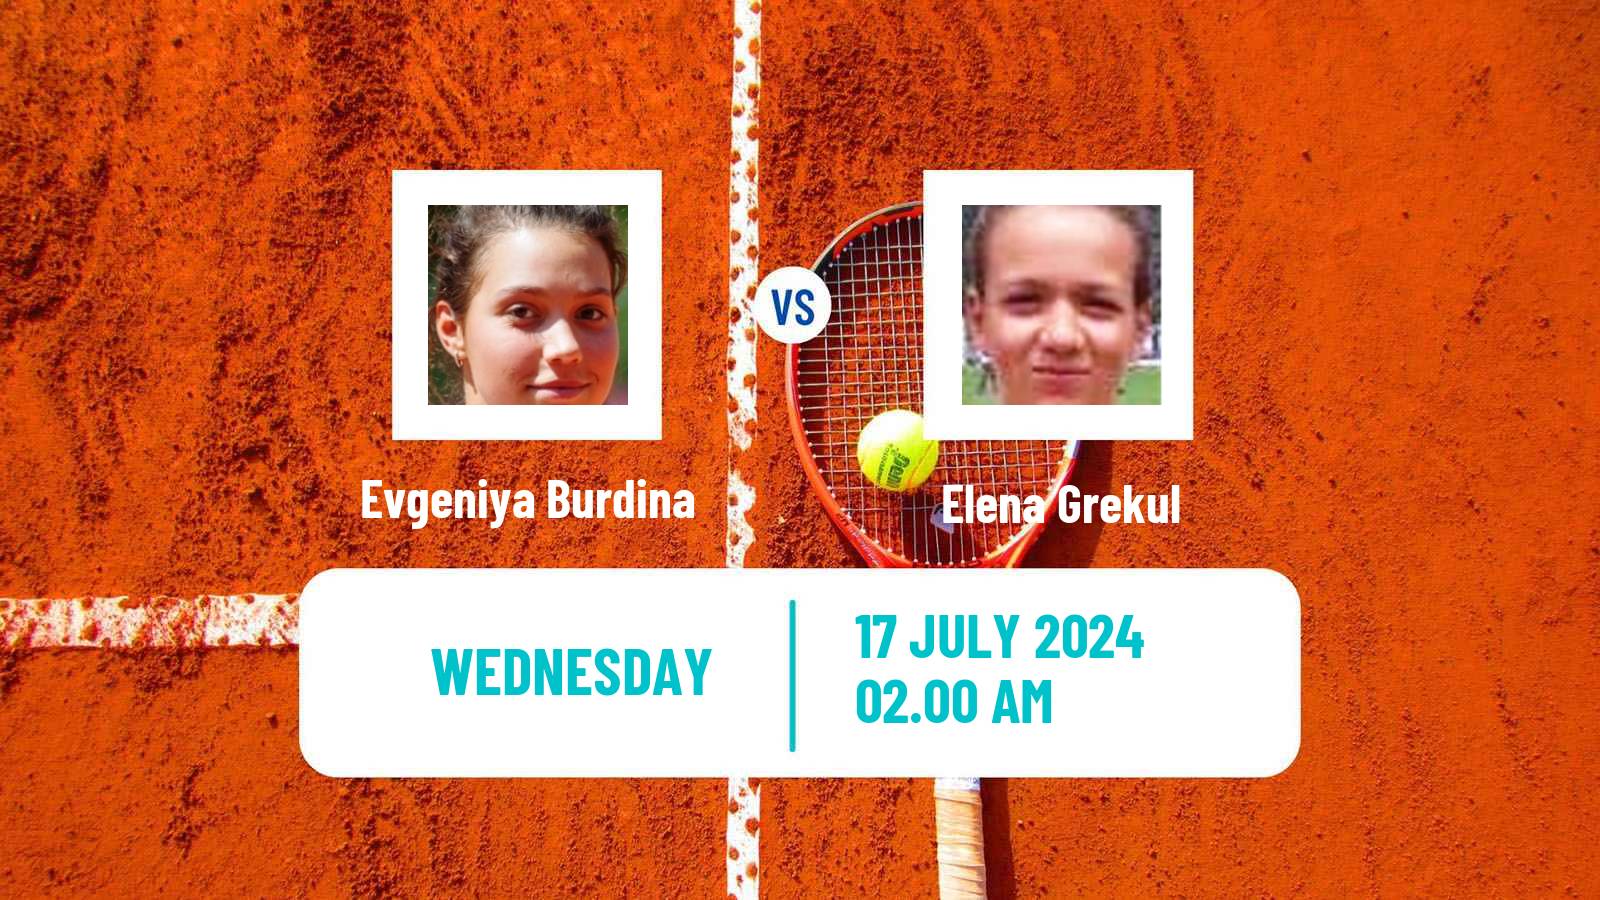 Tennis ITF W15 Kursumlijska Banja 12 Women Evgeniya Burdina - Elena Grekul